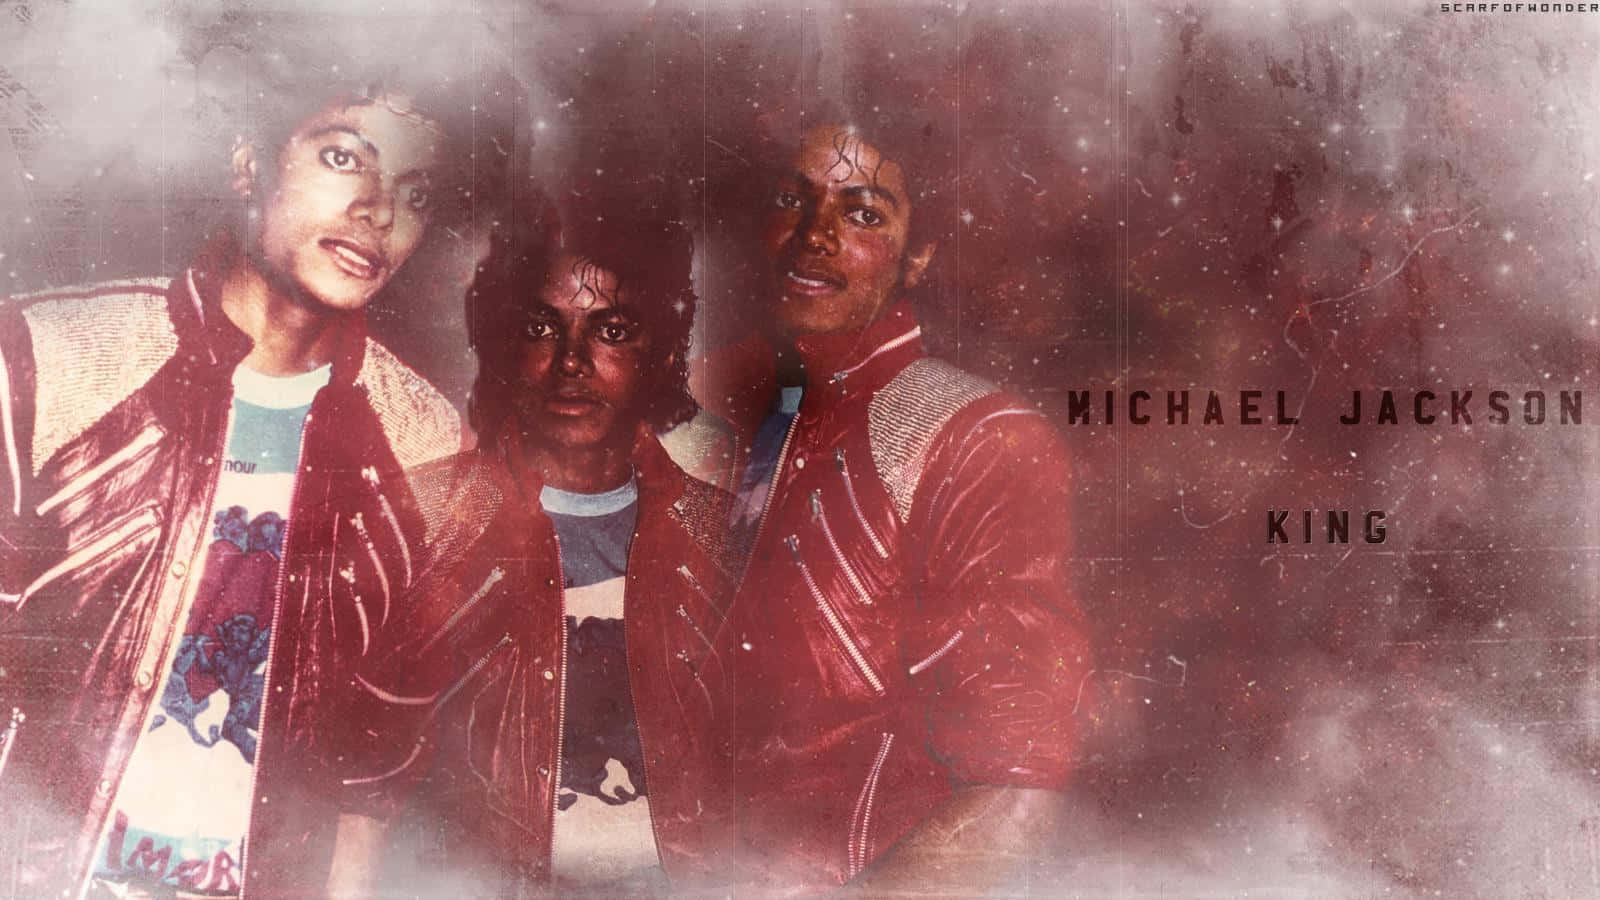 Michael Jackson i hans ikoniske Thriller musikvideo pryder dette tapet. Wallpaper